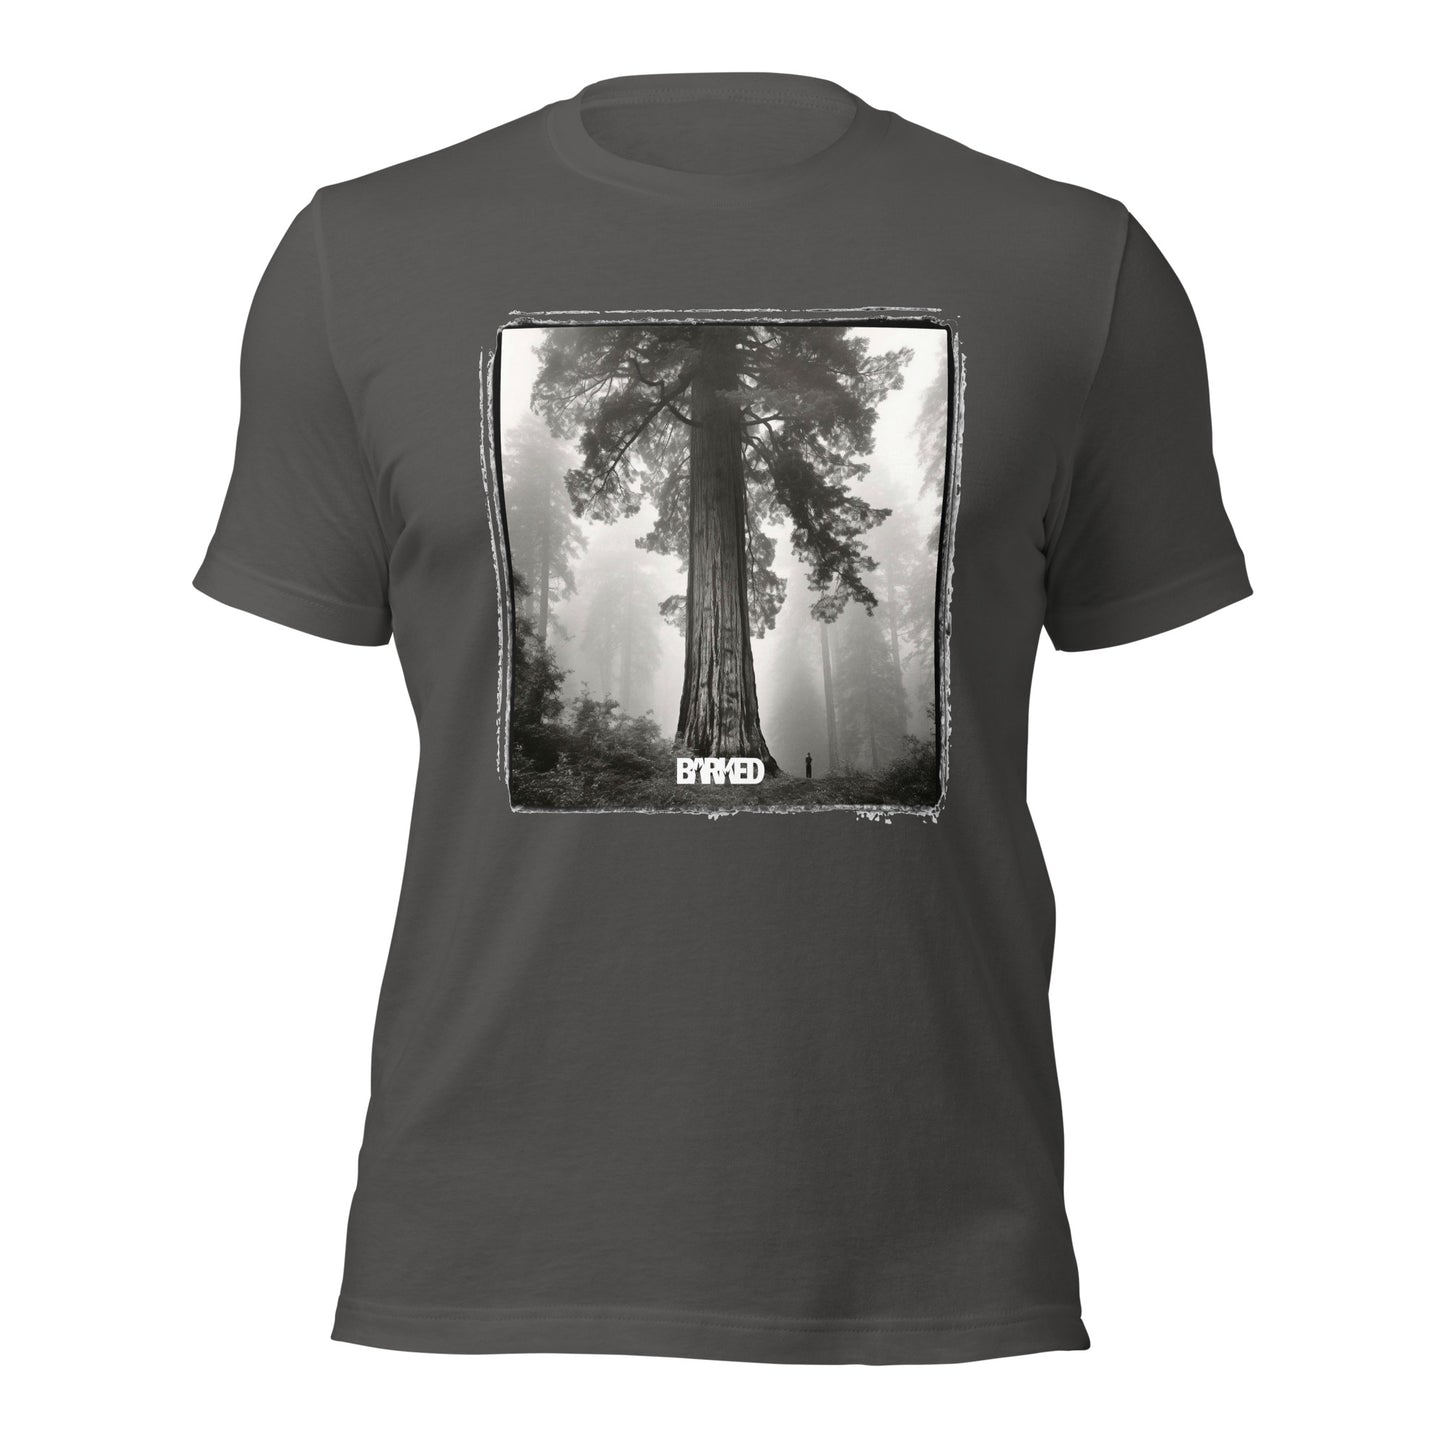 Giant Sequoia Mist—California